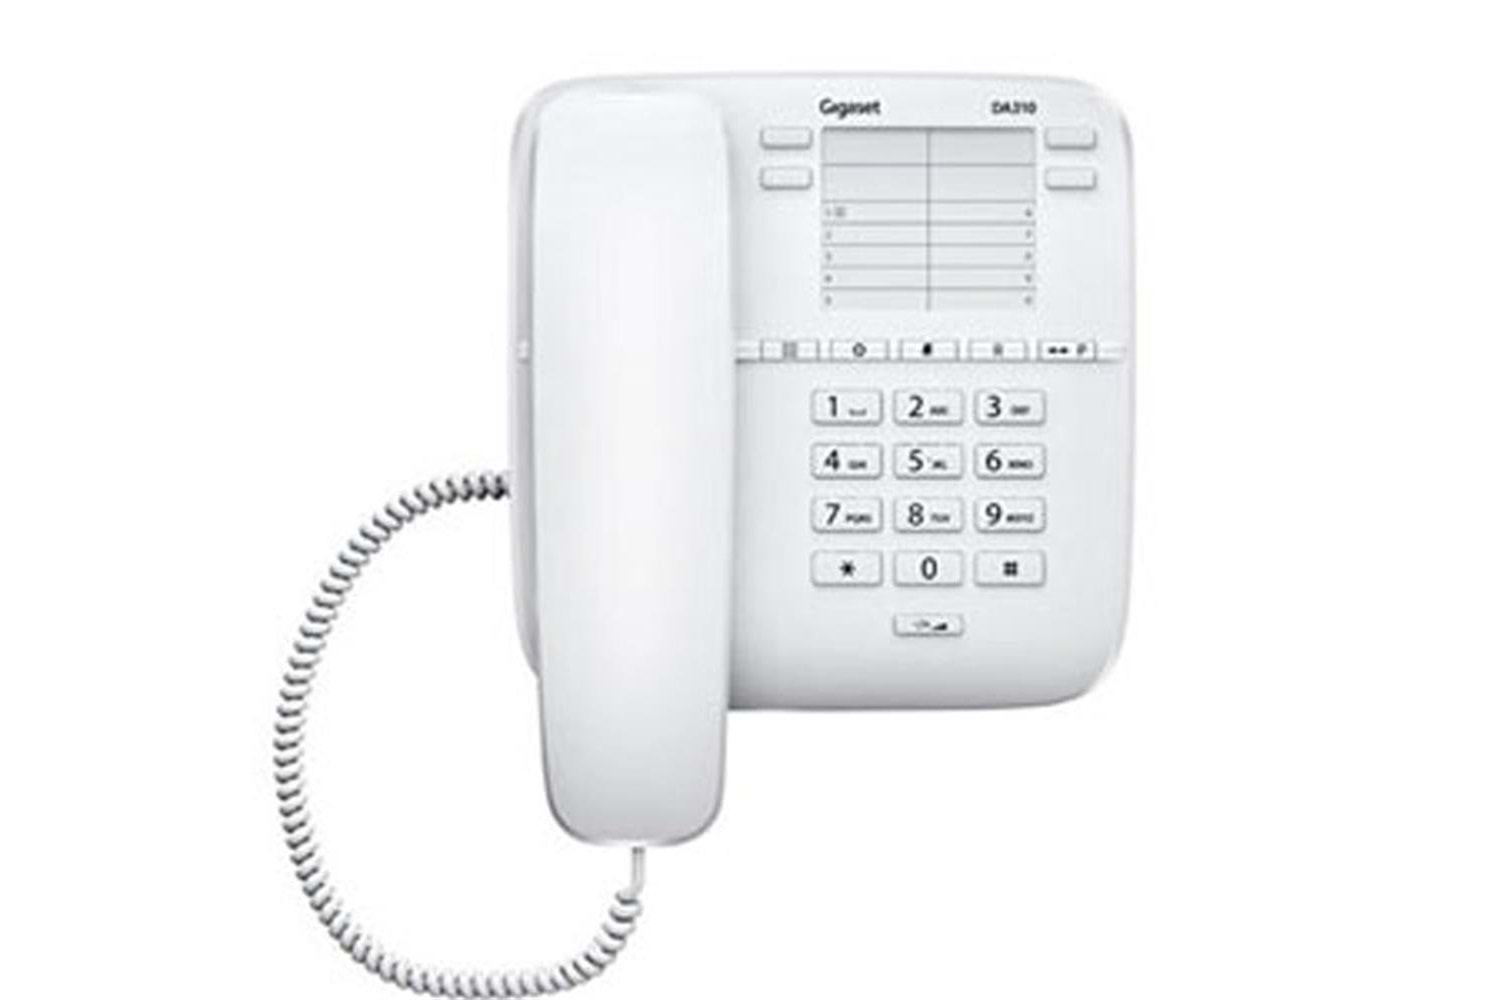 Gigaset Da310 Beyaz Masa Üstü Telefon